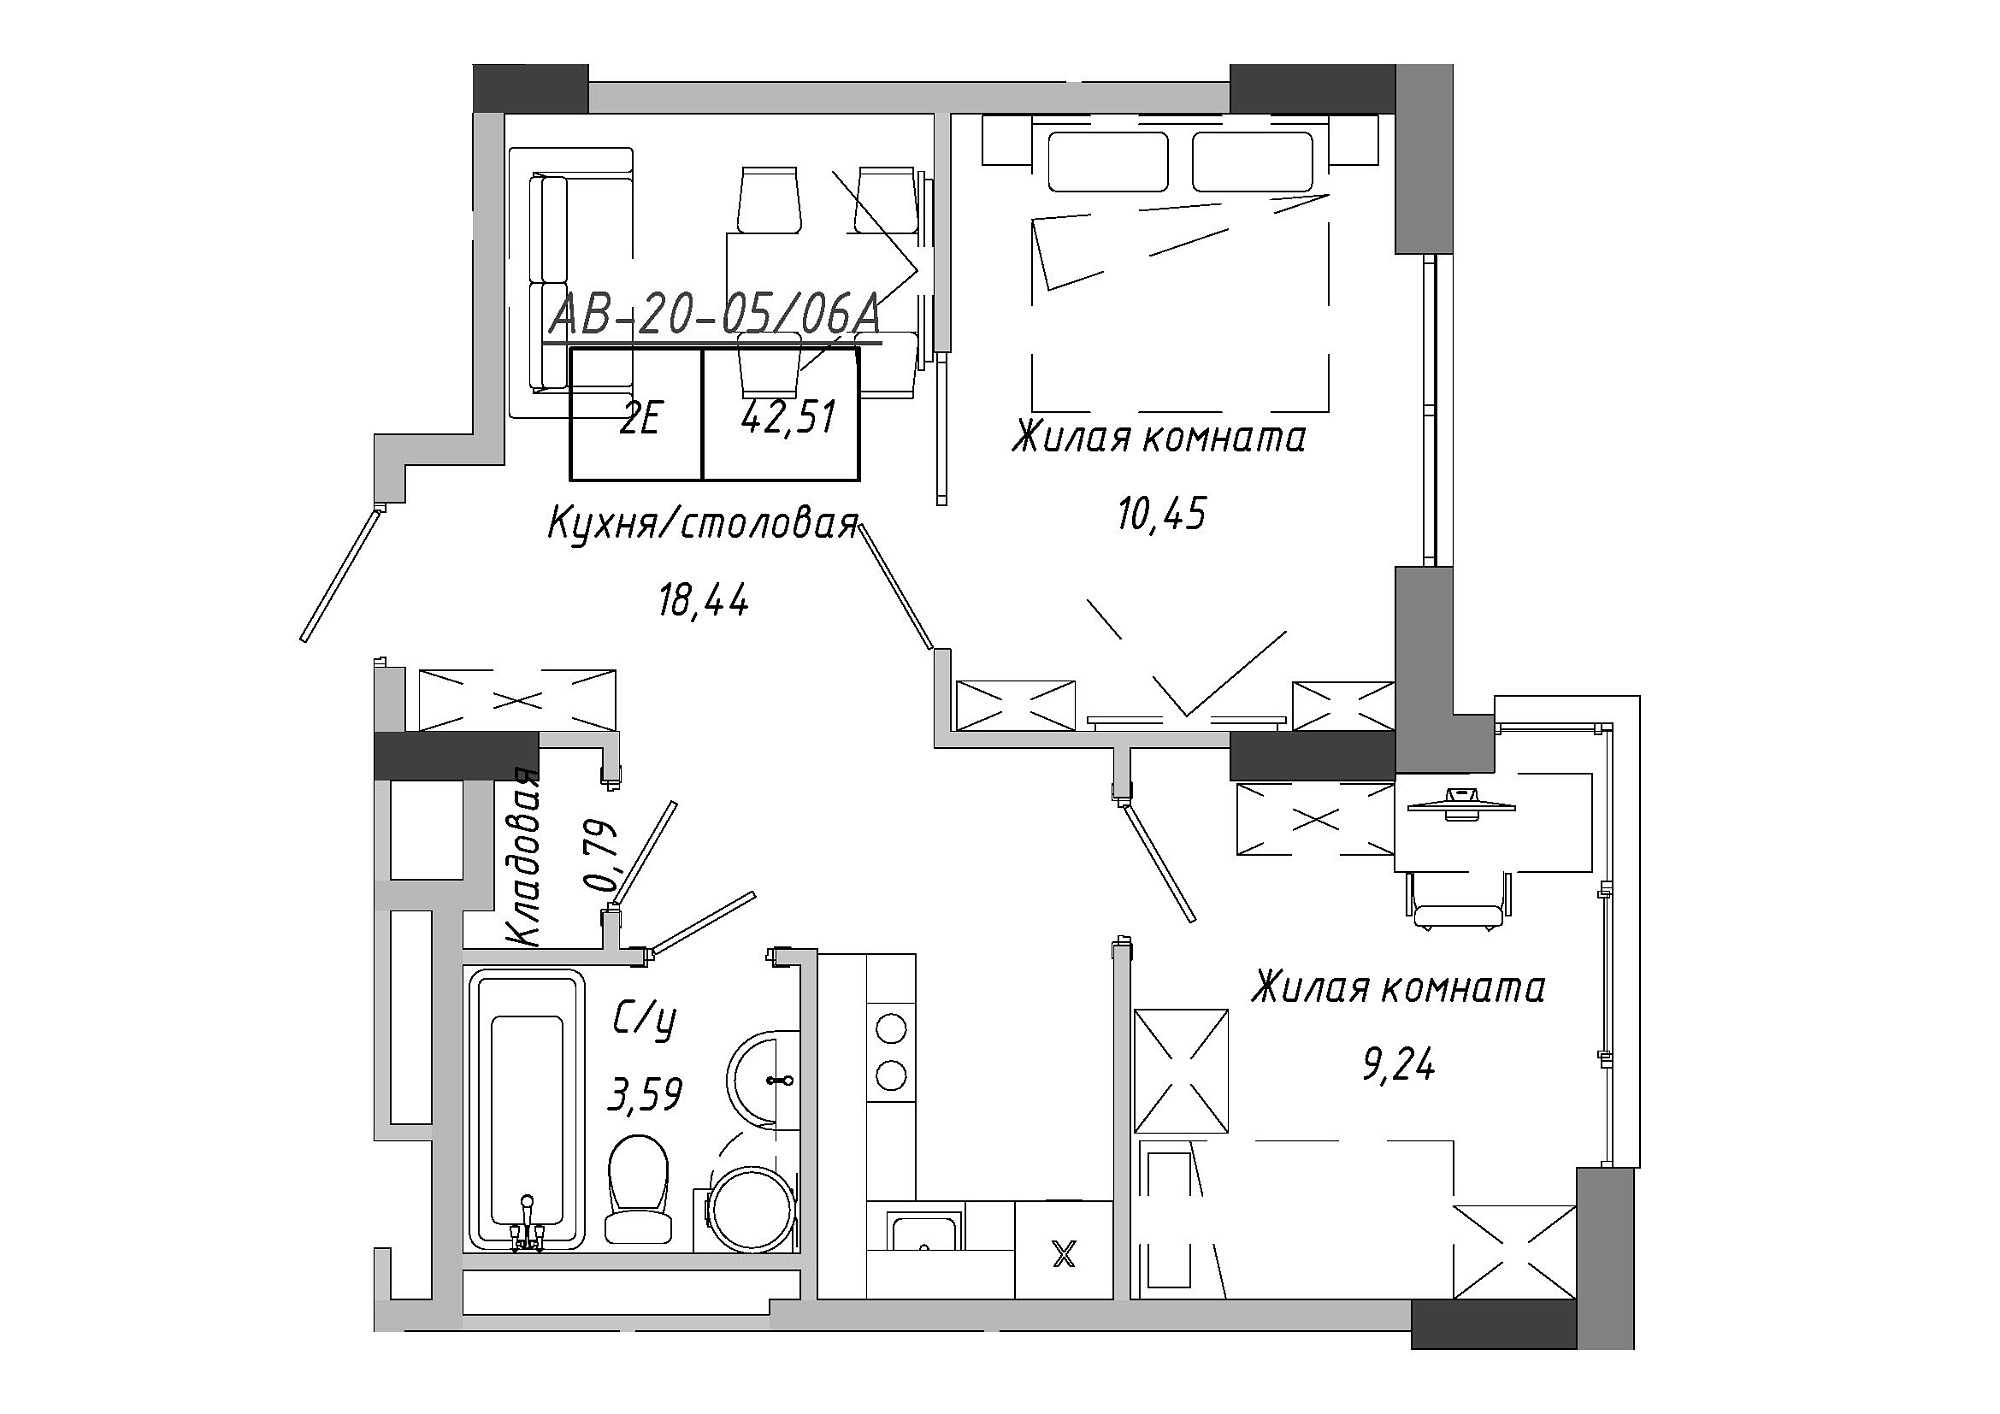 Планировка 2-к квартира площей 42.85м2, AB-20-05/0006а.